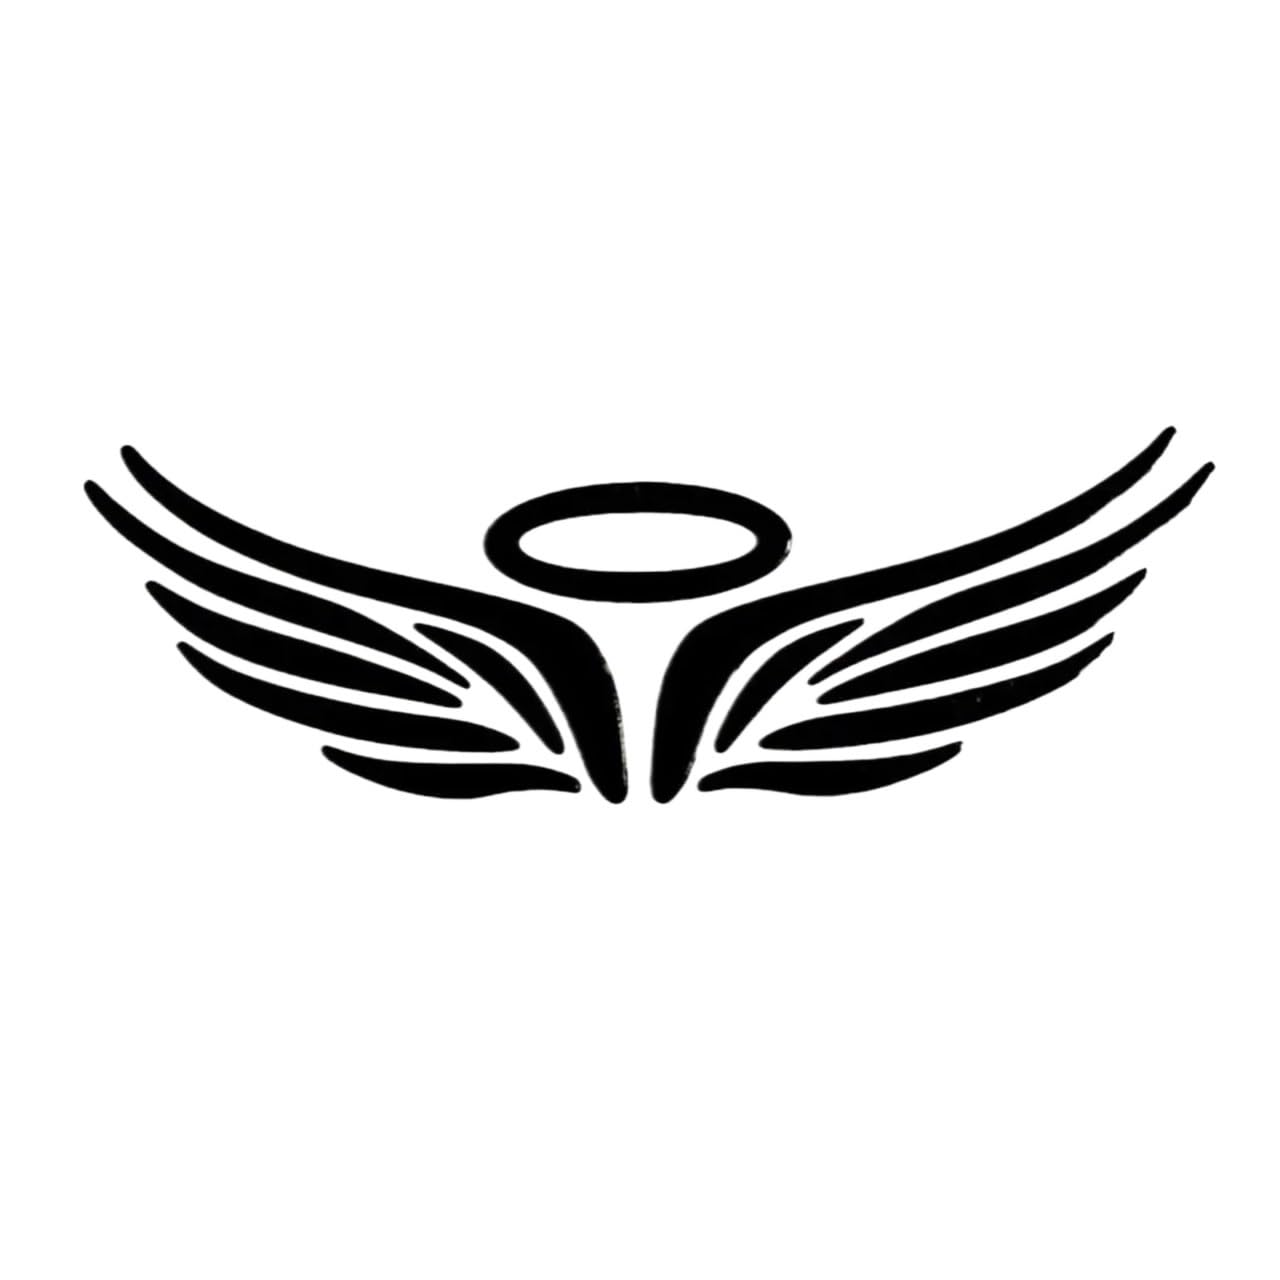 3D-Engelsflügel-Autoaufkleber, Fahrzeug-Emblem, Abzeichen, Logo, Auto-Styling, wasserabweisend, hohe Klebrigkeit, Stoßstangenaufkleber(Black) von NRUOS